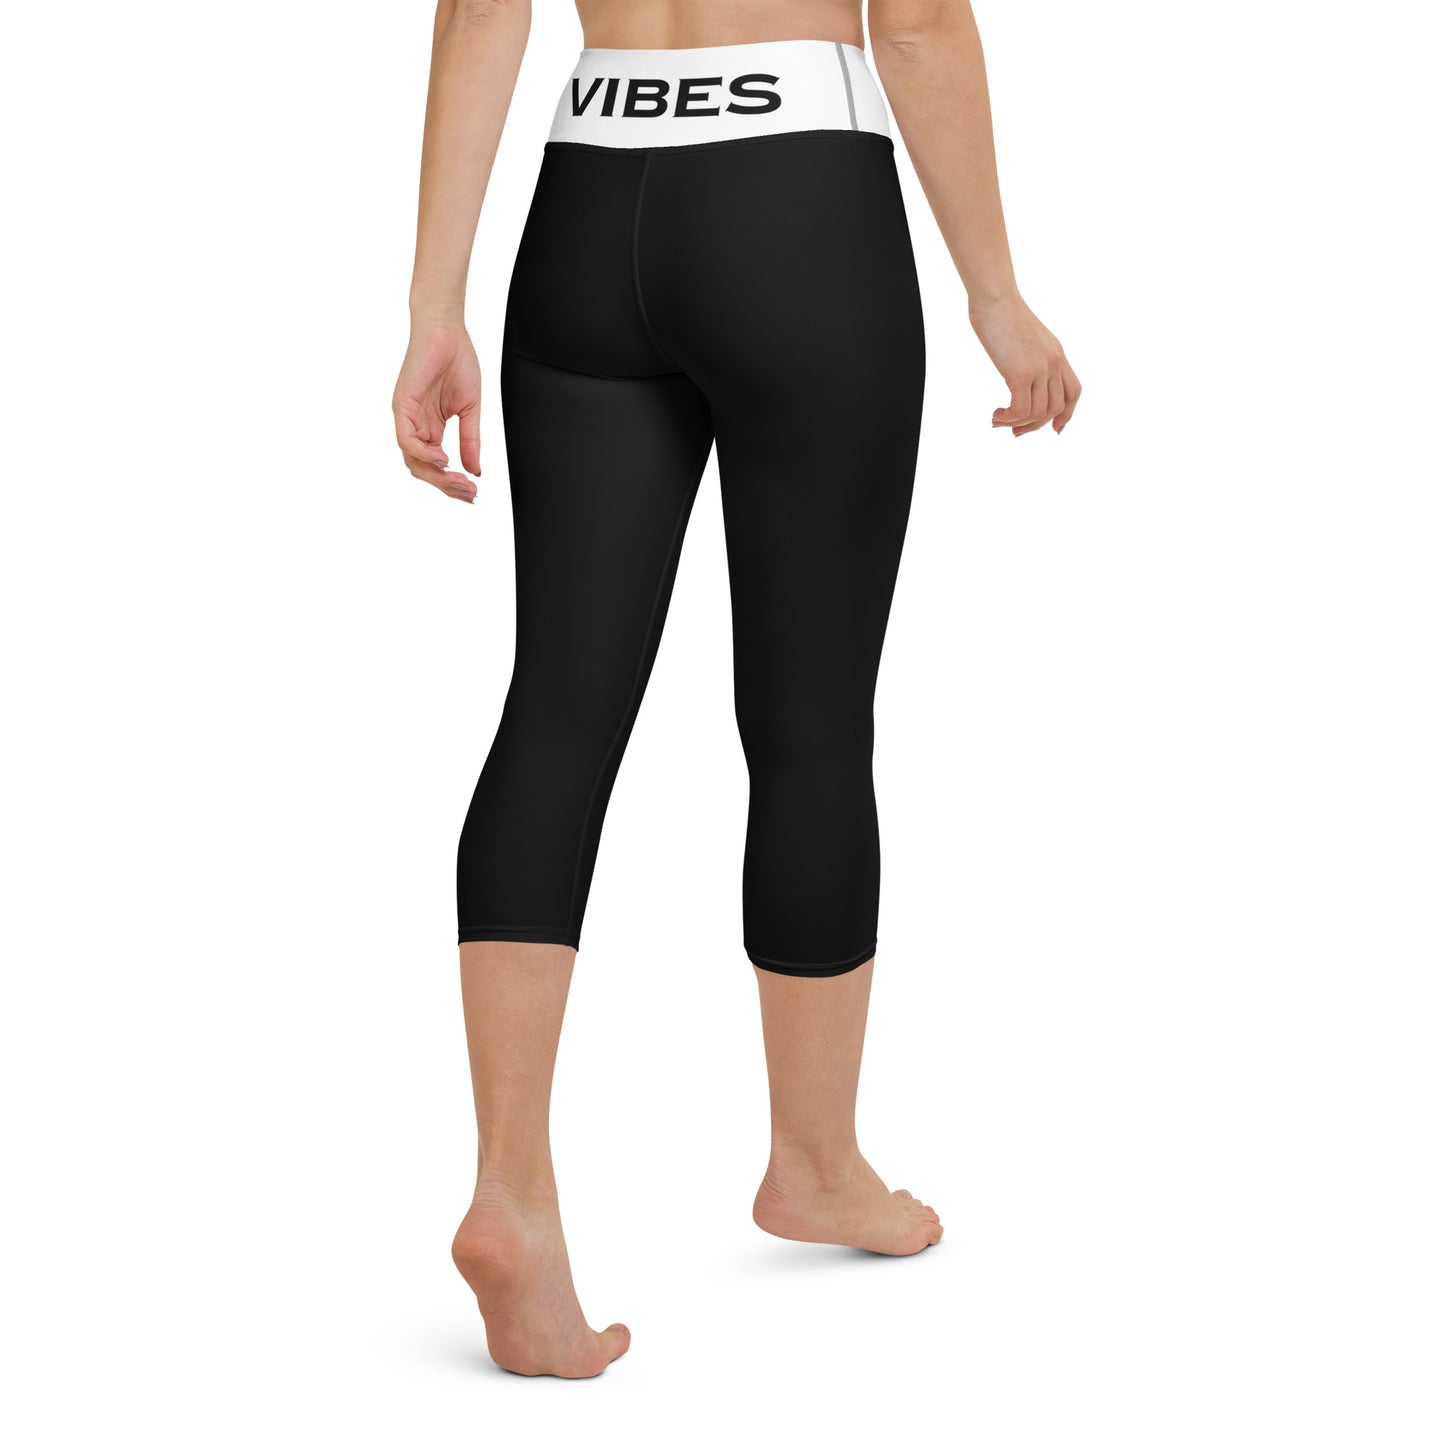 TIME OF VIBES - Yoga Capri Leggings VIBES (Black/White) - €49.00